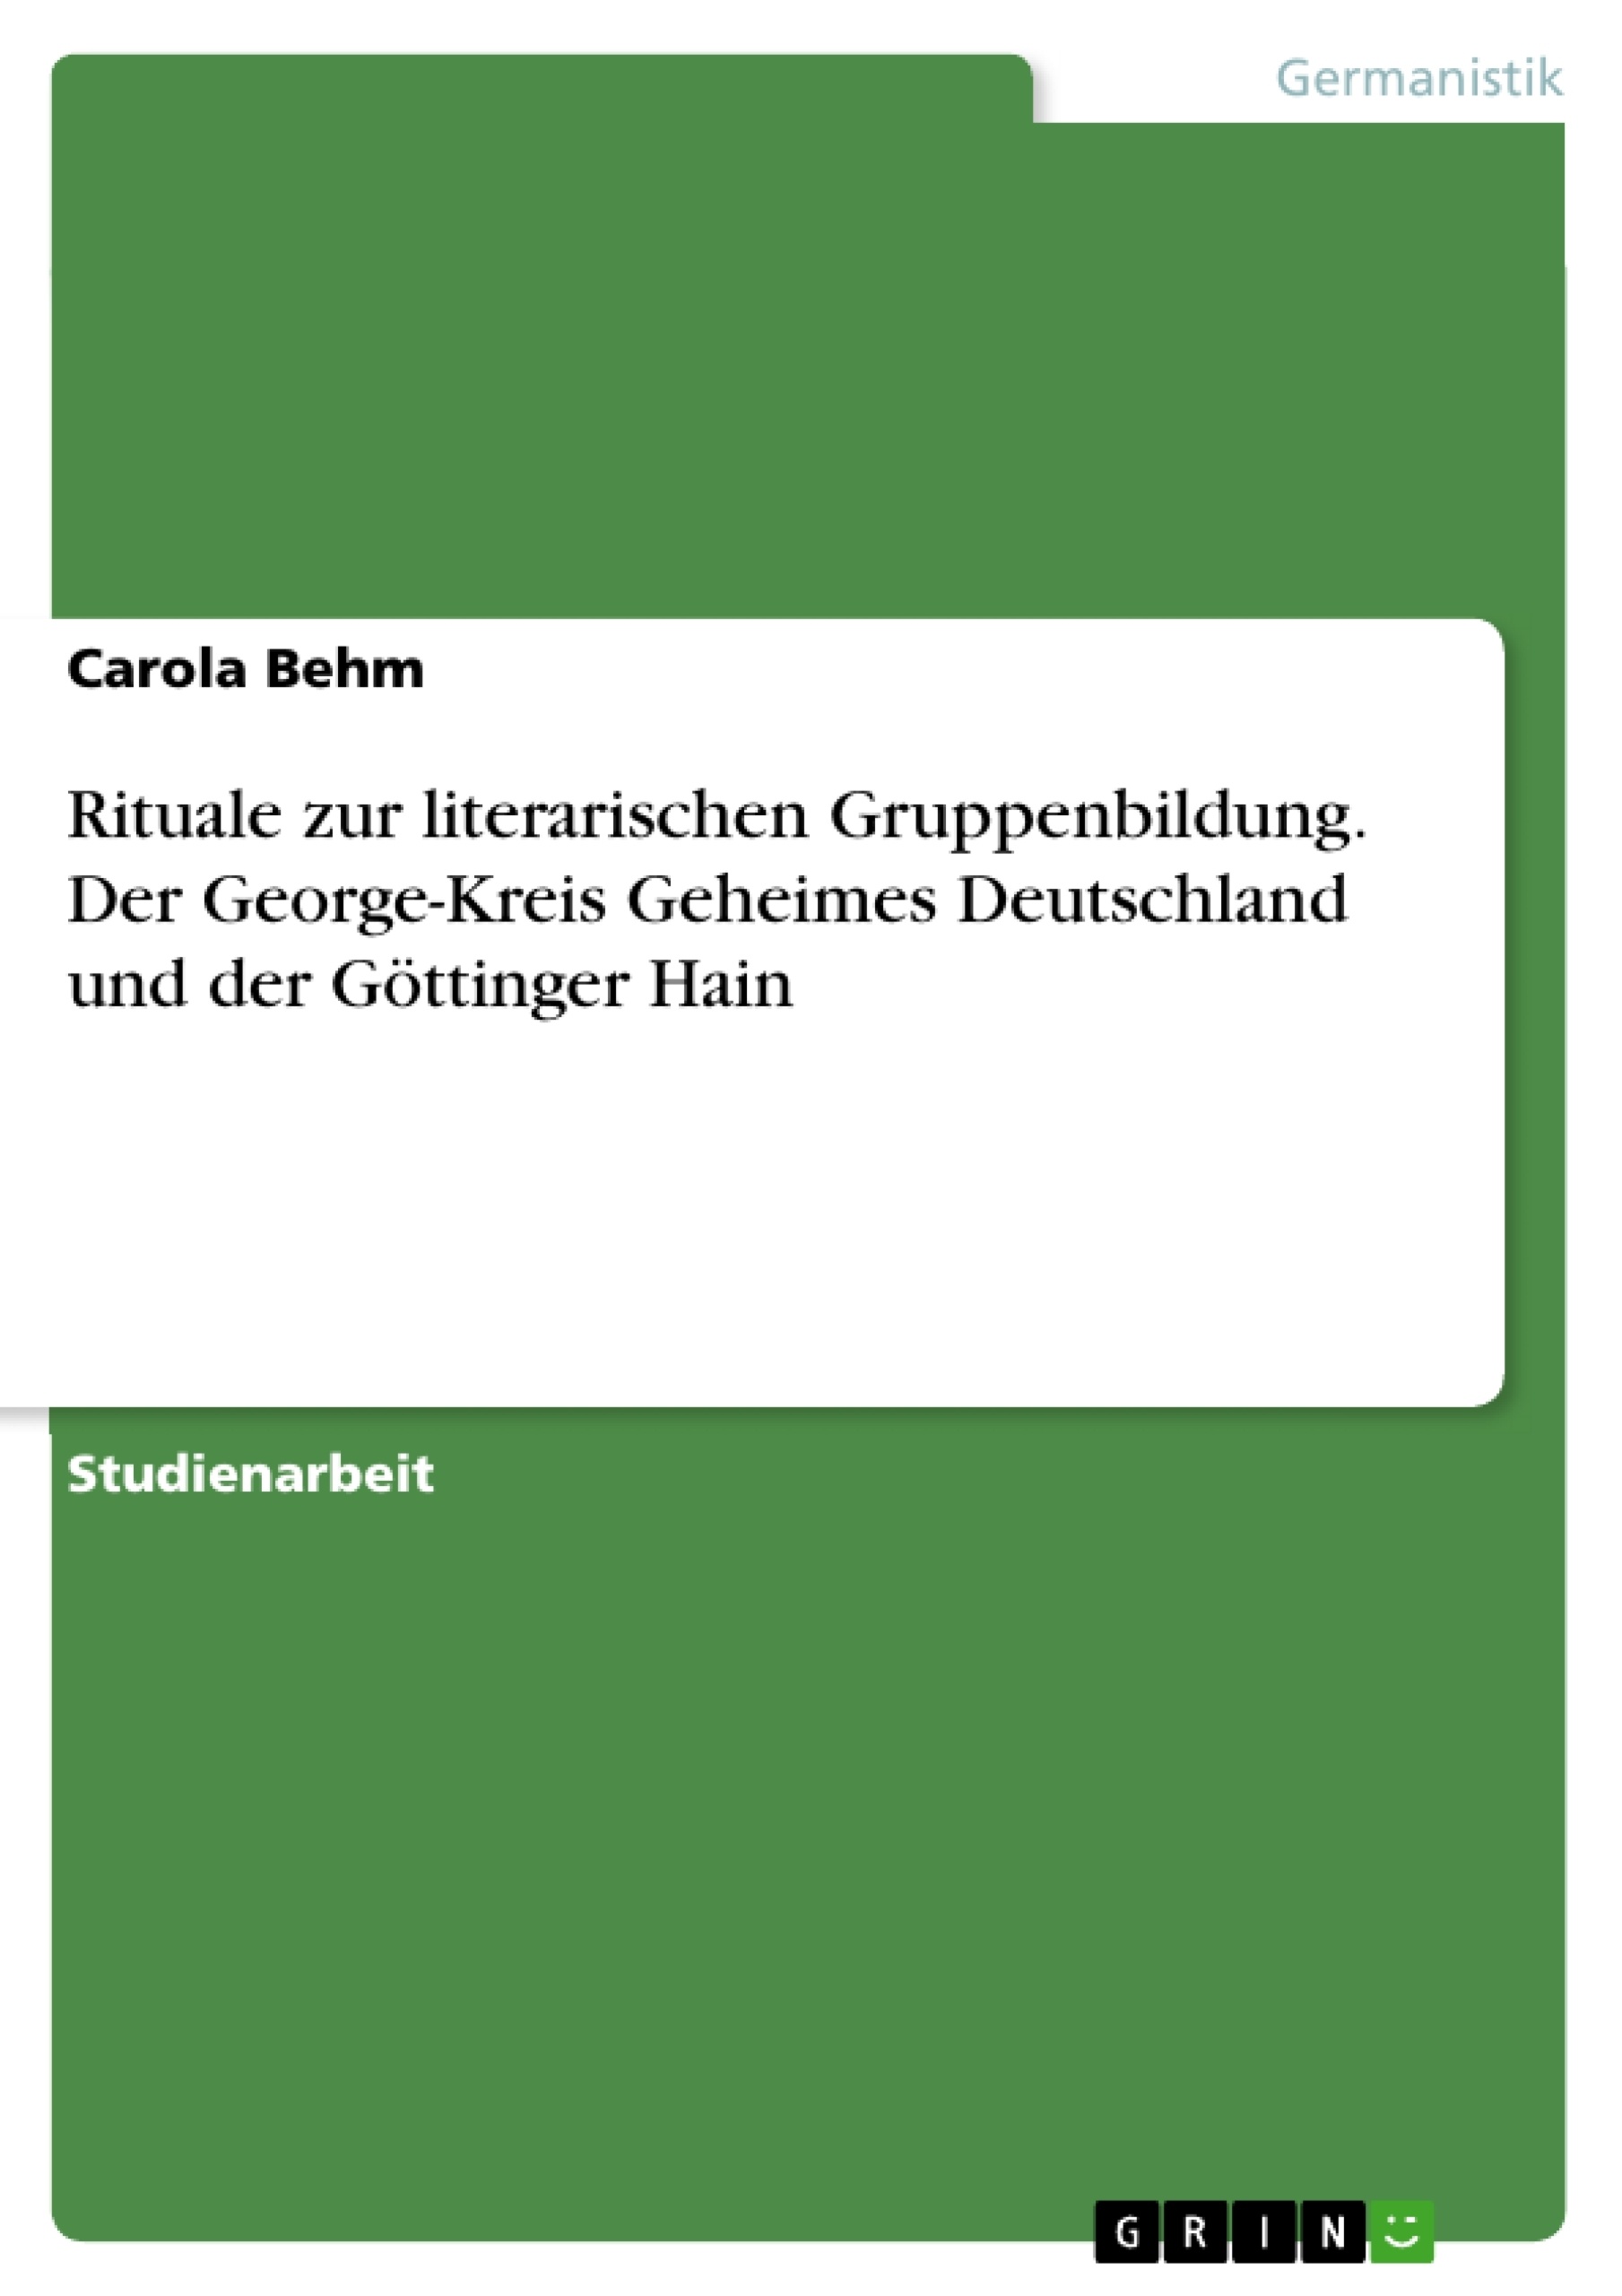 Title: Rituale zur literarischen Gruppenbildung. Der George-Kreis Geheimes Deutschland und der Göttinger Hain